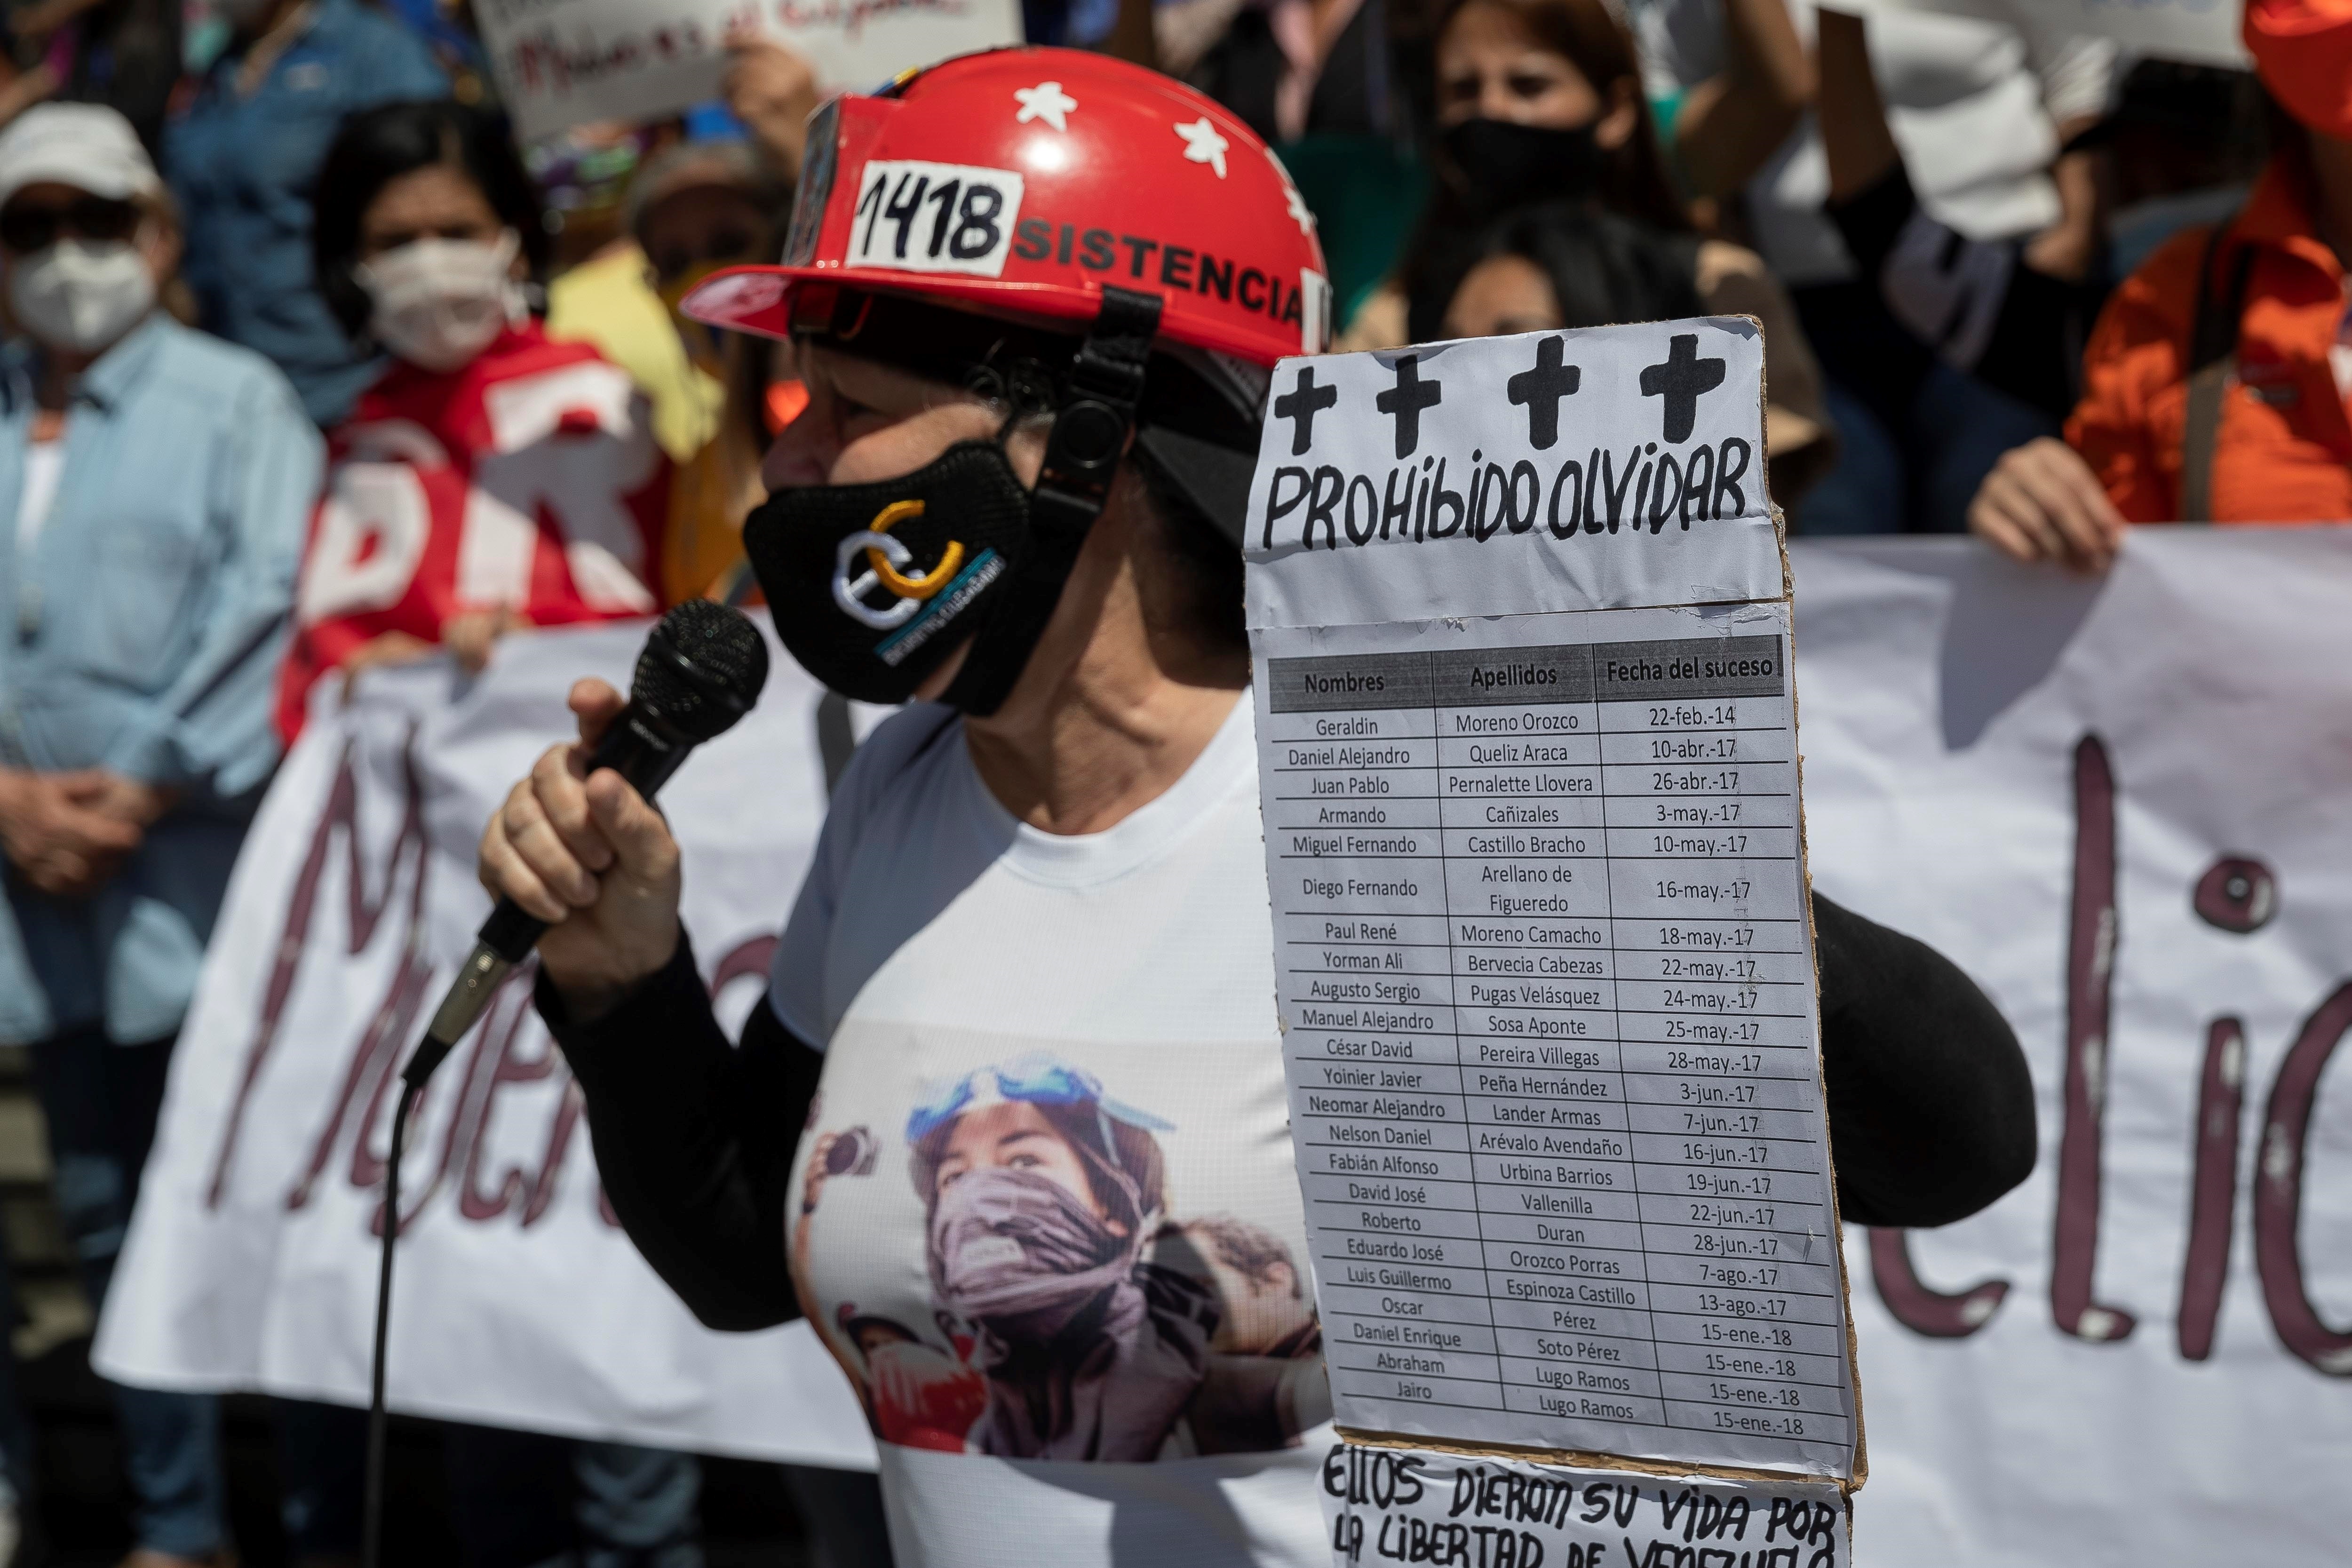 El pasado mes de junio, el Consejo de DDHH de la ONU denunció más casos de torturas, detenciones arbitrarias y persecución a la oposición en Venezuela. Además, señaló graves errores cometidos por el régimen de Nicolás Maduro para hacer frente a la emergencia sanitaria por la pandemia de COVID-19.